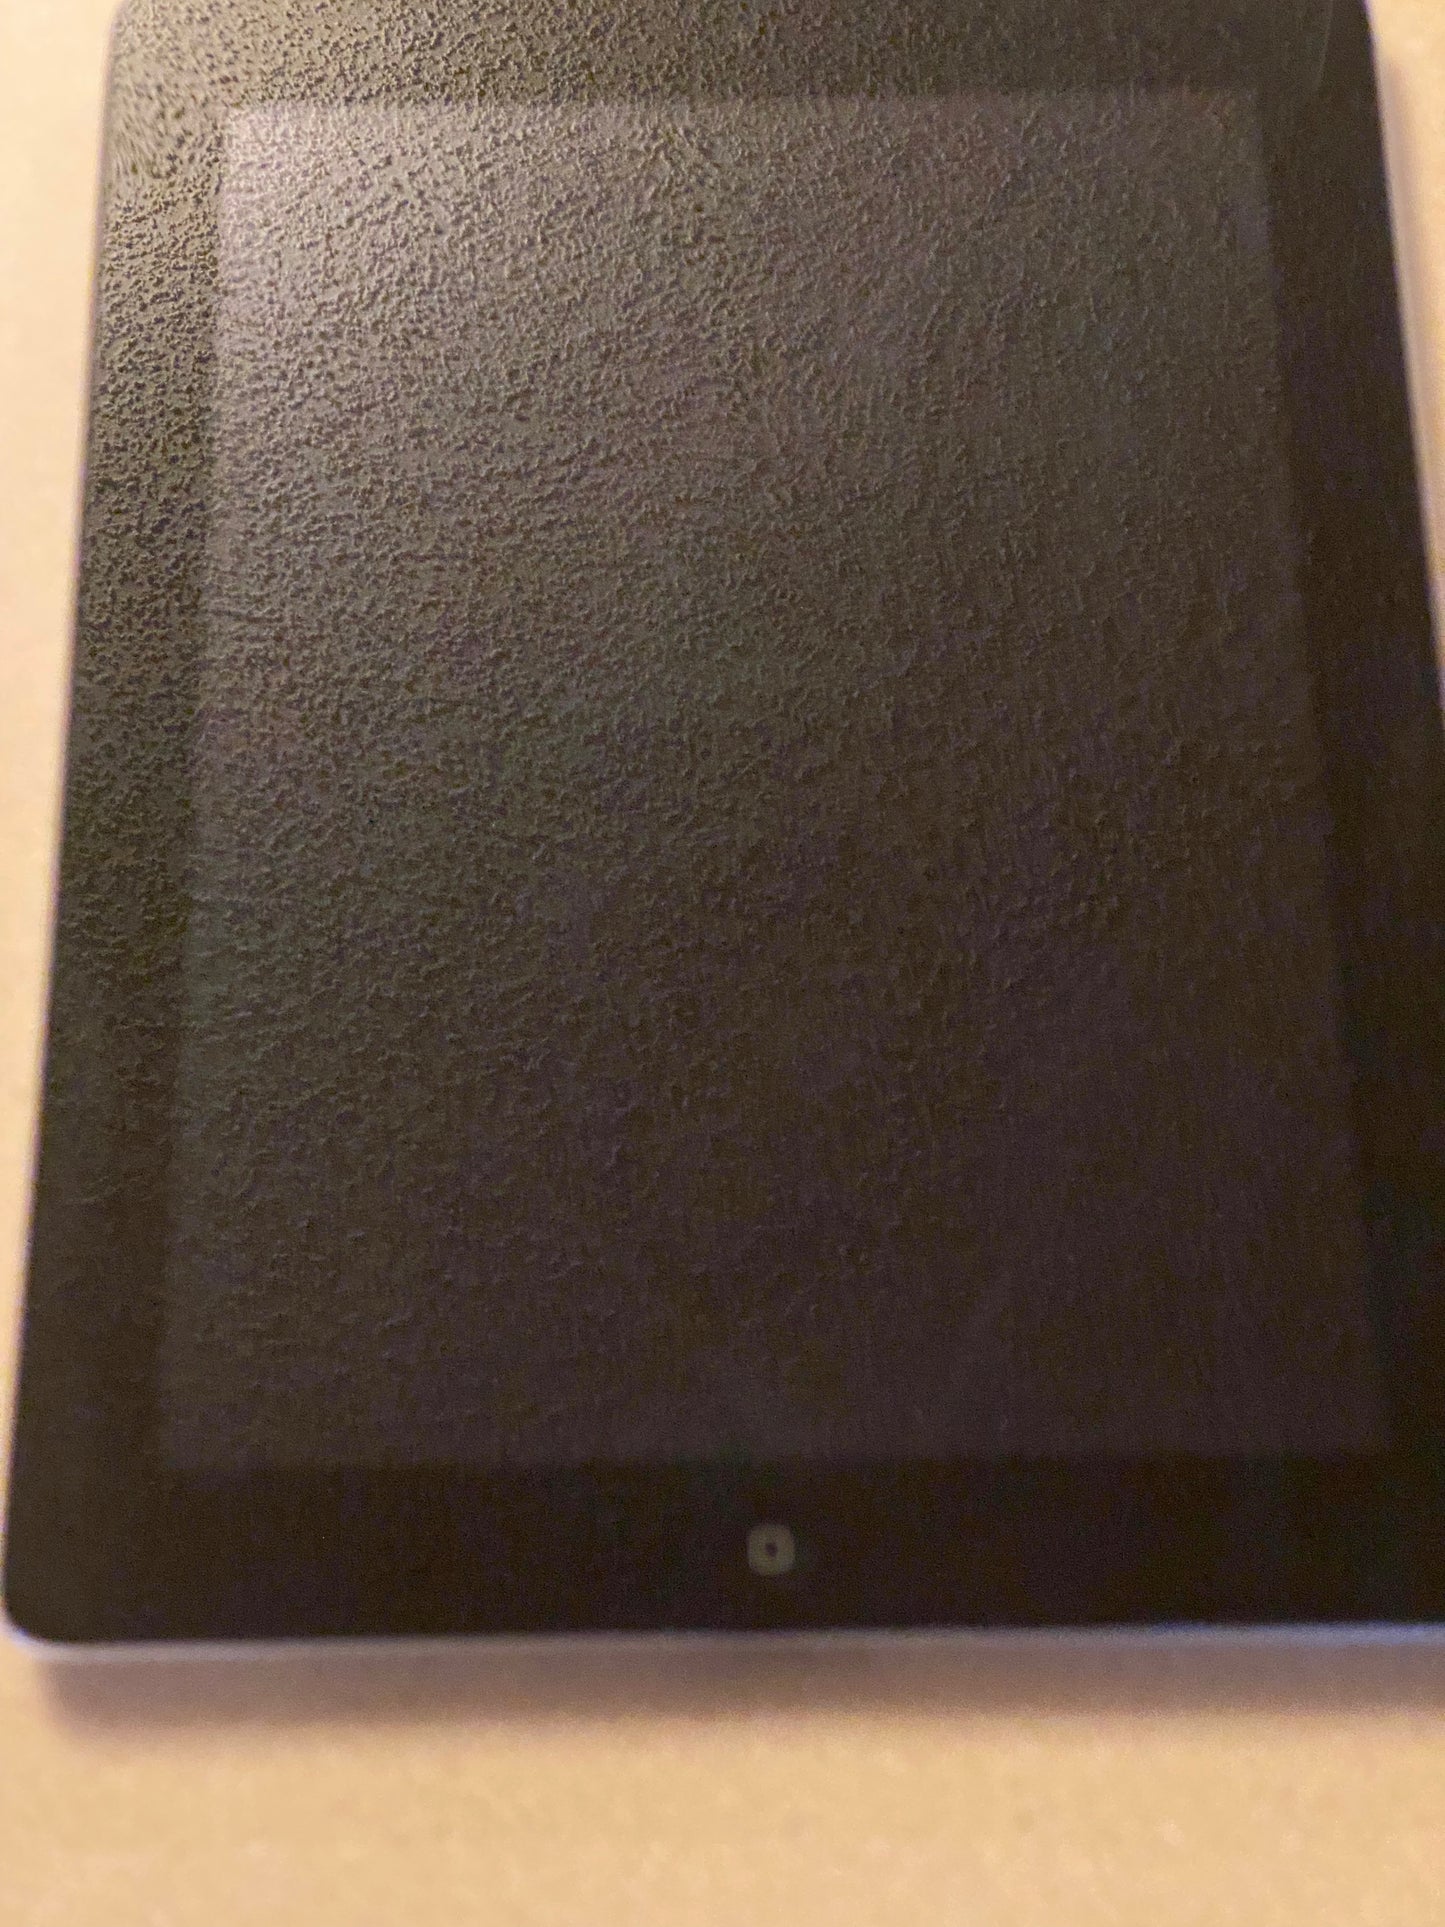 Apple iPad 3rd Gen. A1416 32GB, Wi-Fi (Unlocked), 9.7in Black - Cracked Screen